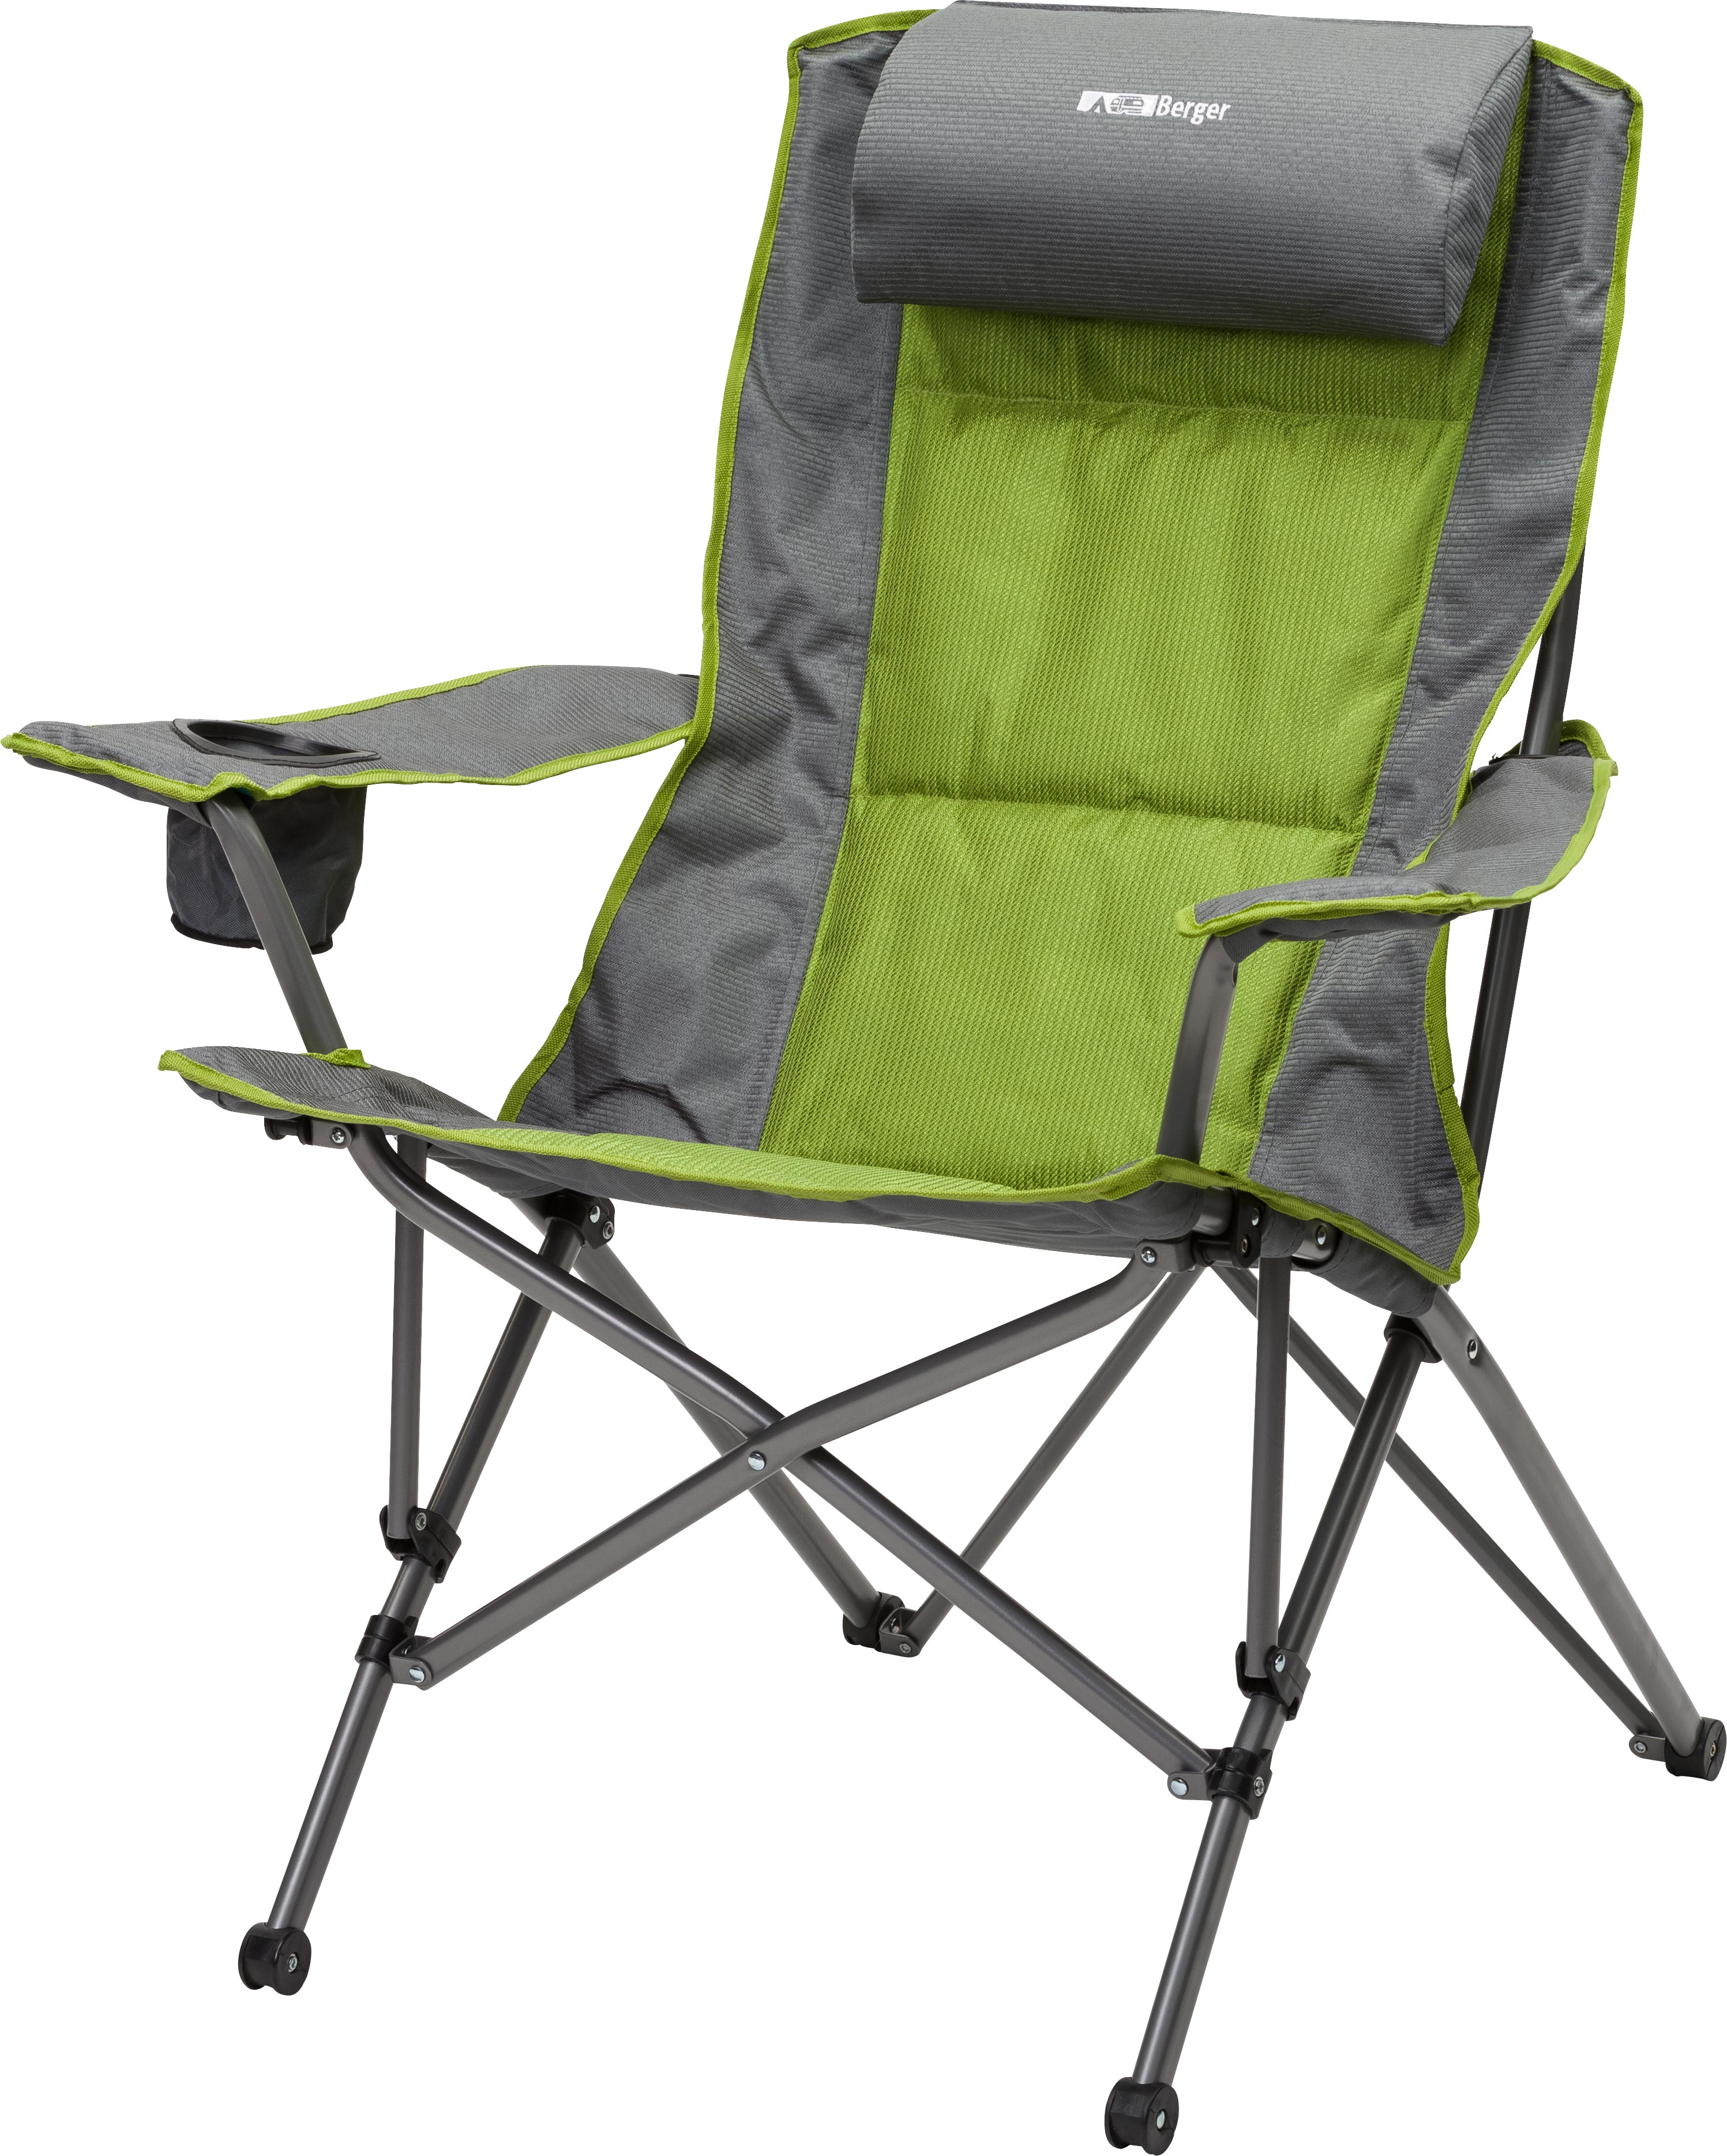 Лучшая кемпинговая мебель. Складное кресло Frosinone Camping Active. Мебель для кемпинга Berger. Стул складной туристический JD-1005 33,5х27х35см. Blaupunkt стул туристический складной.